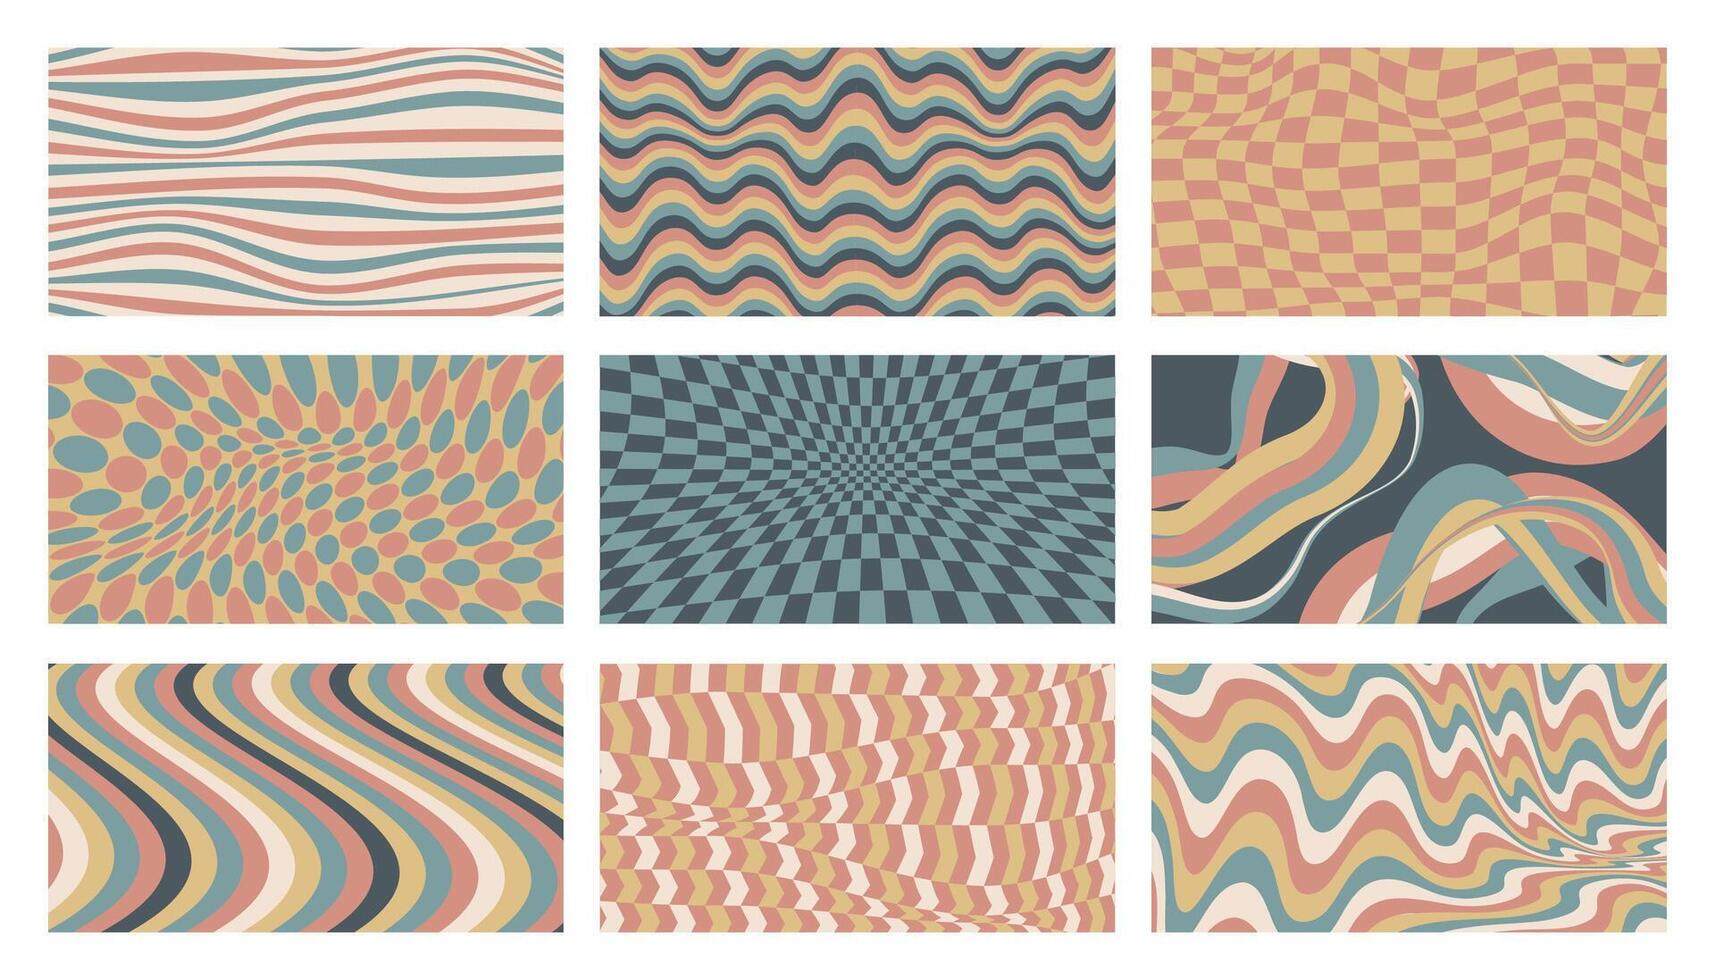 häftig bakgrund uppsättning. 70s psychedelic abstrakt tapet med hippie blommig mönster, retro 70s dekorativ bakgrund för baner design. vektor samling